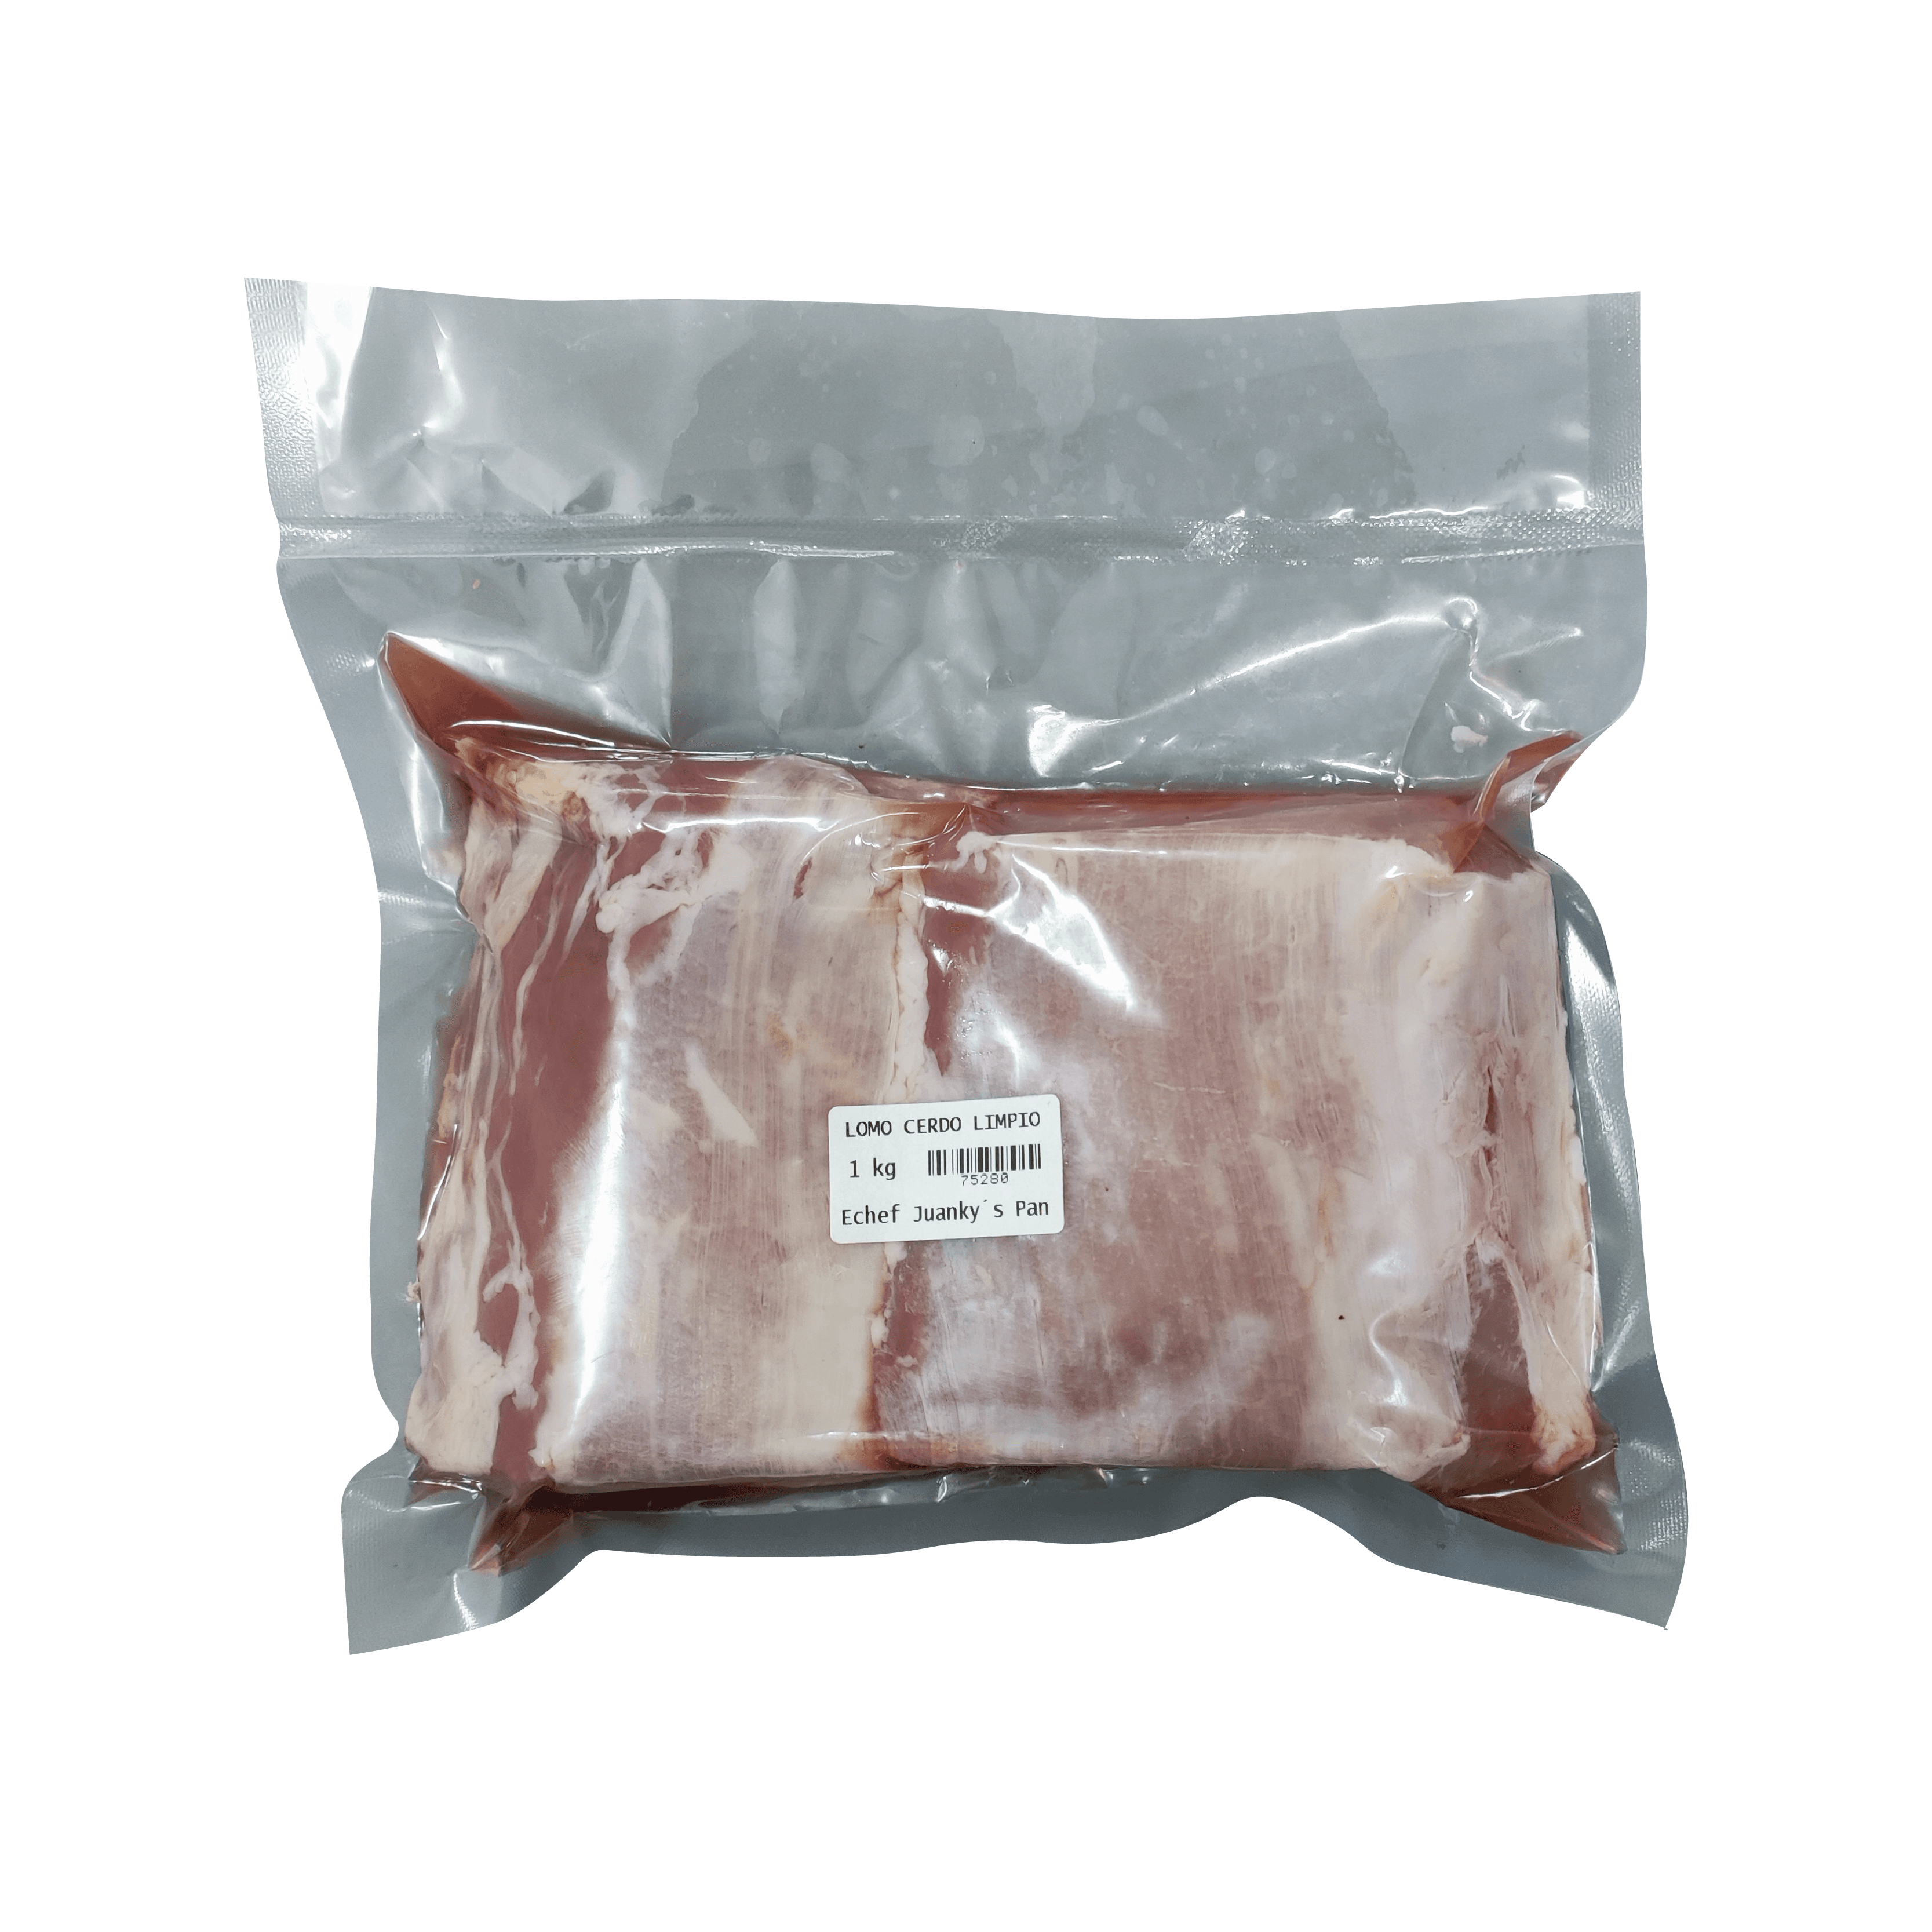 Lomo de cerdo limpio (1 kg / 2.2 lb)